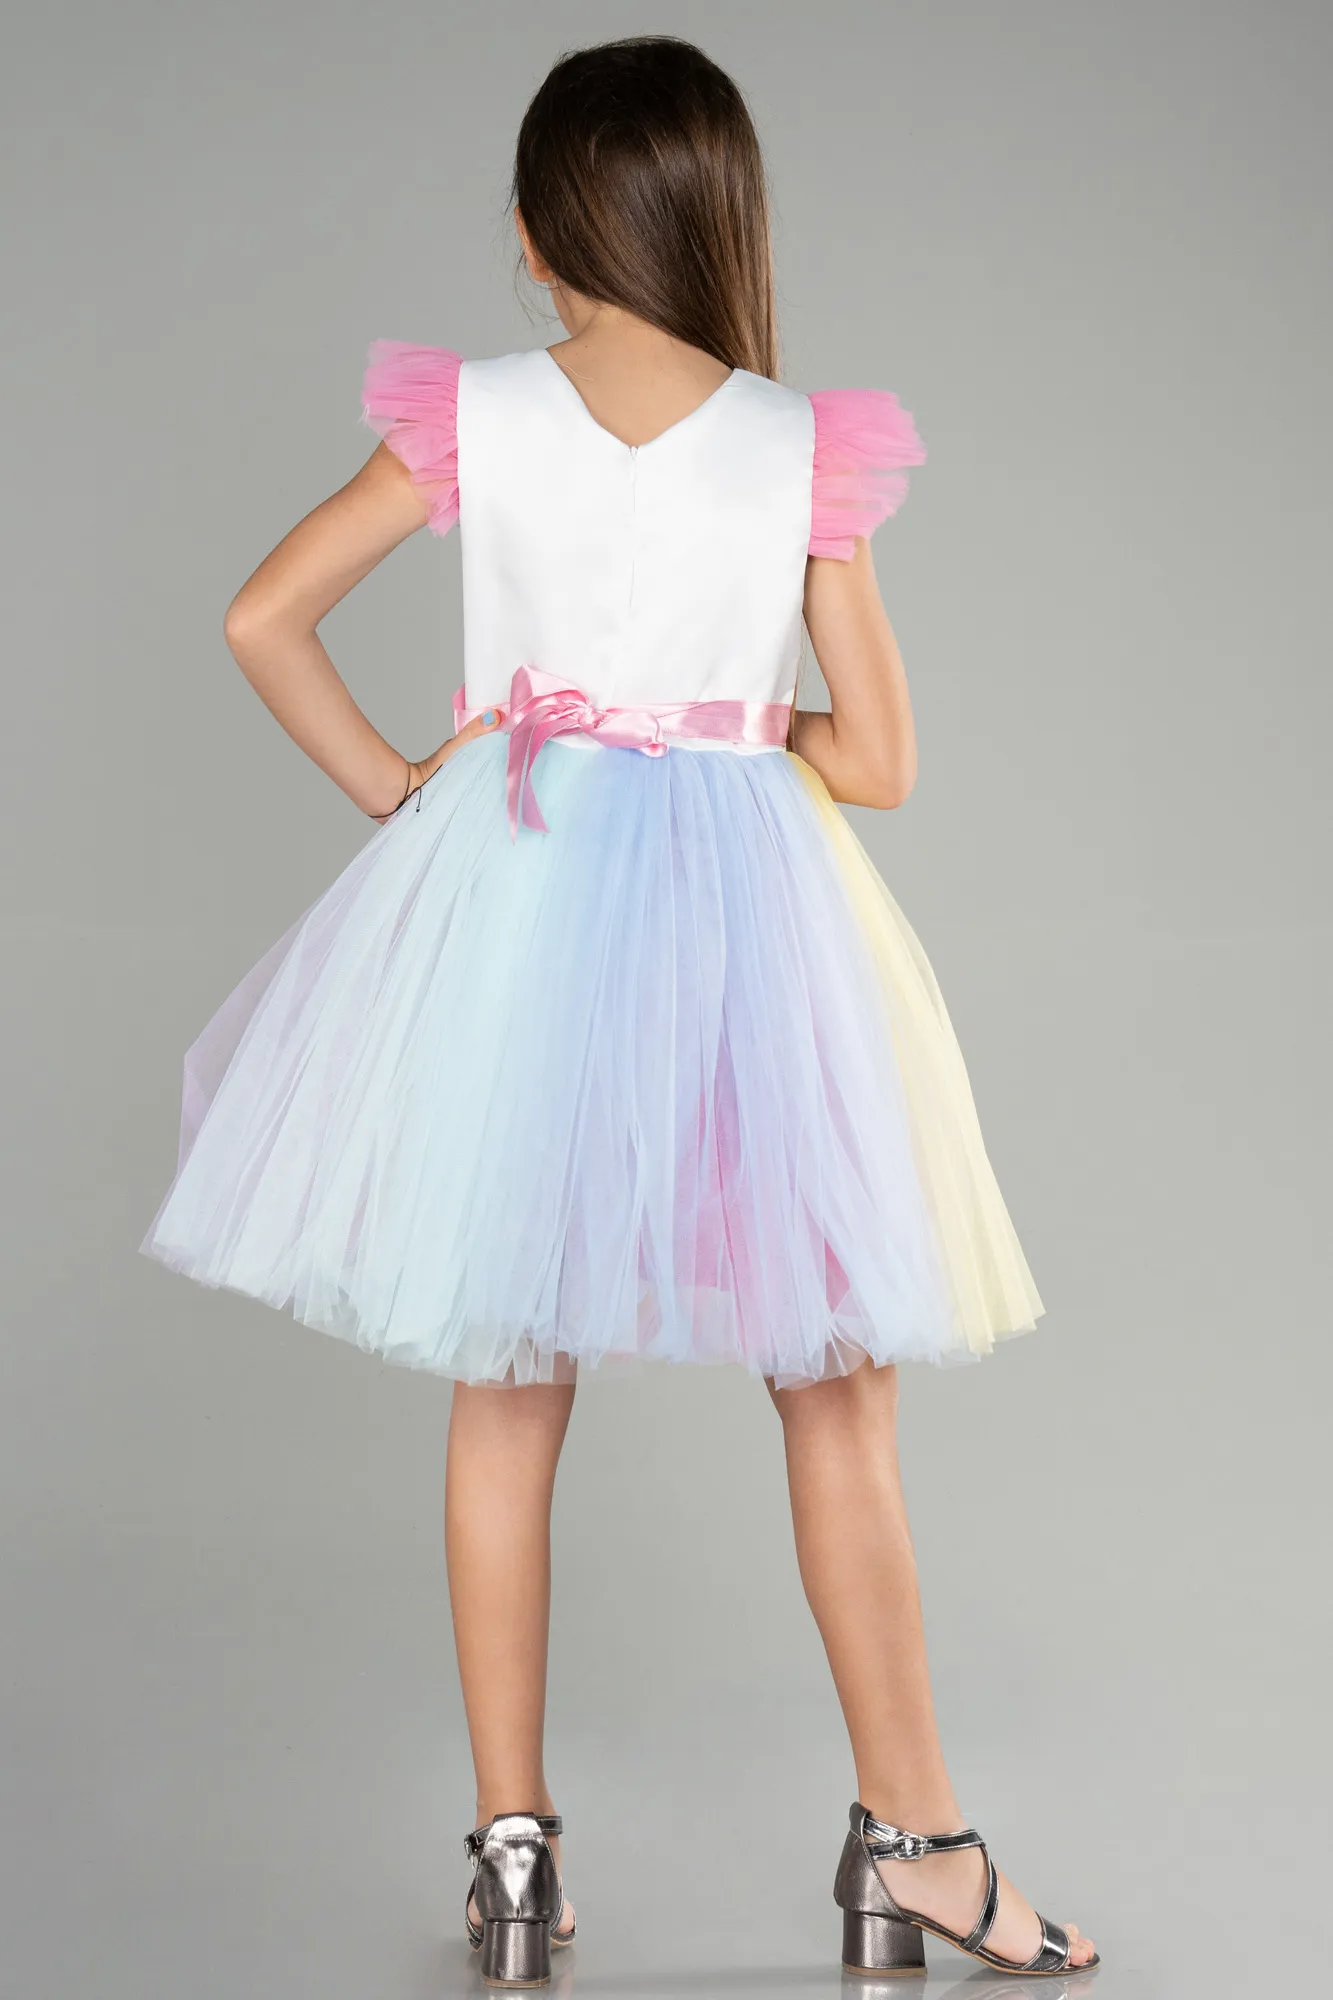 Rinser-Short Girl Dress ABK1761